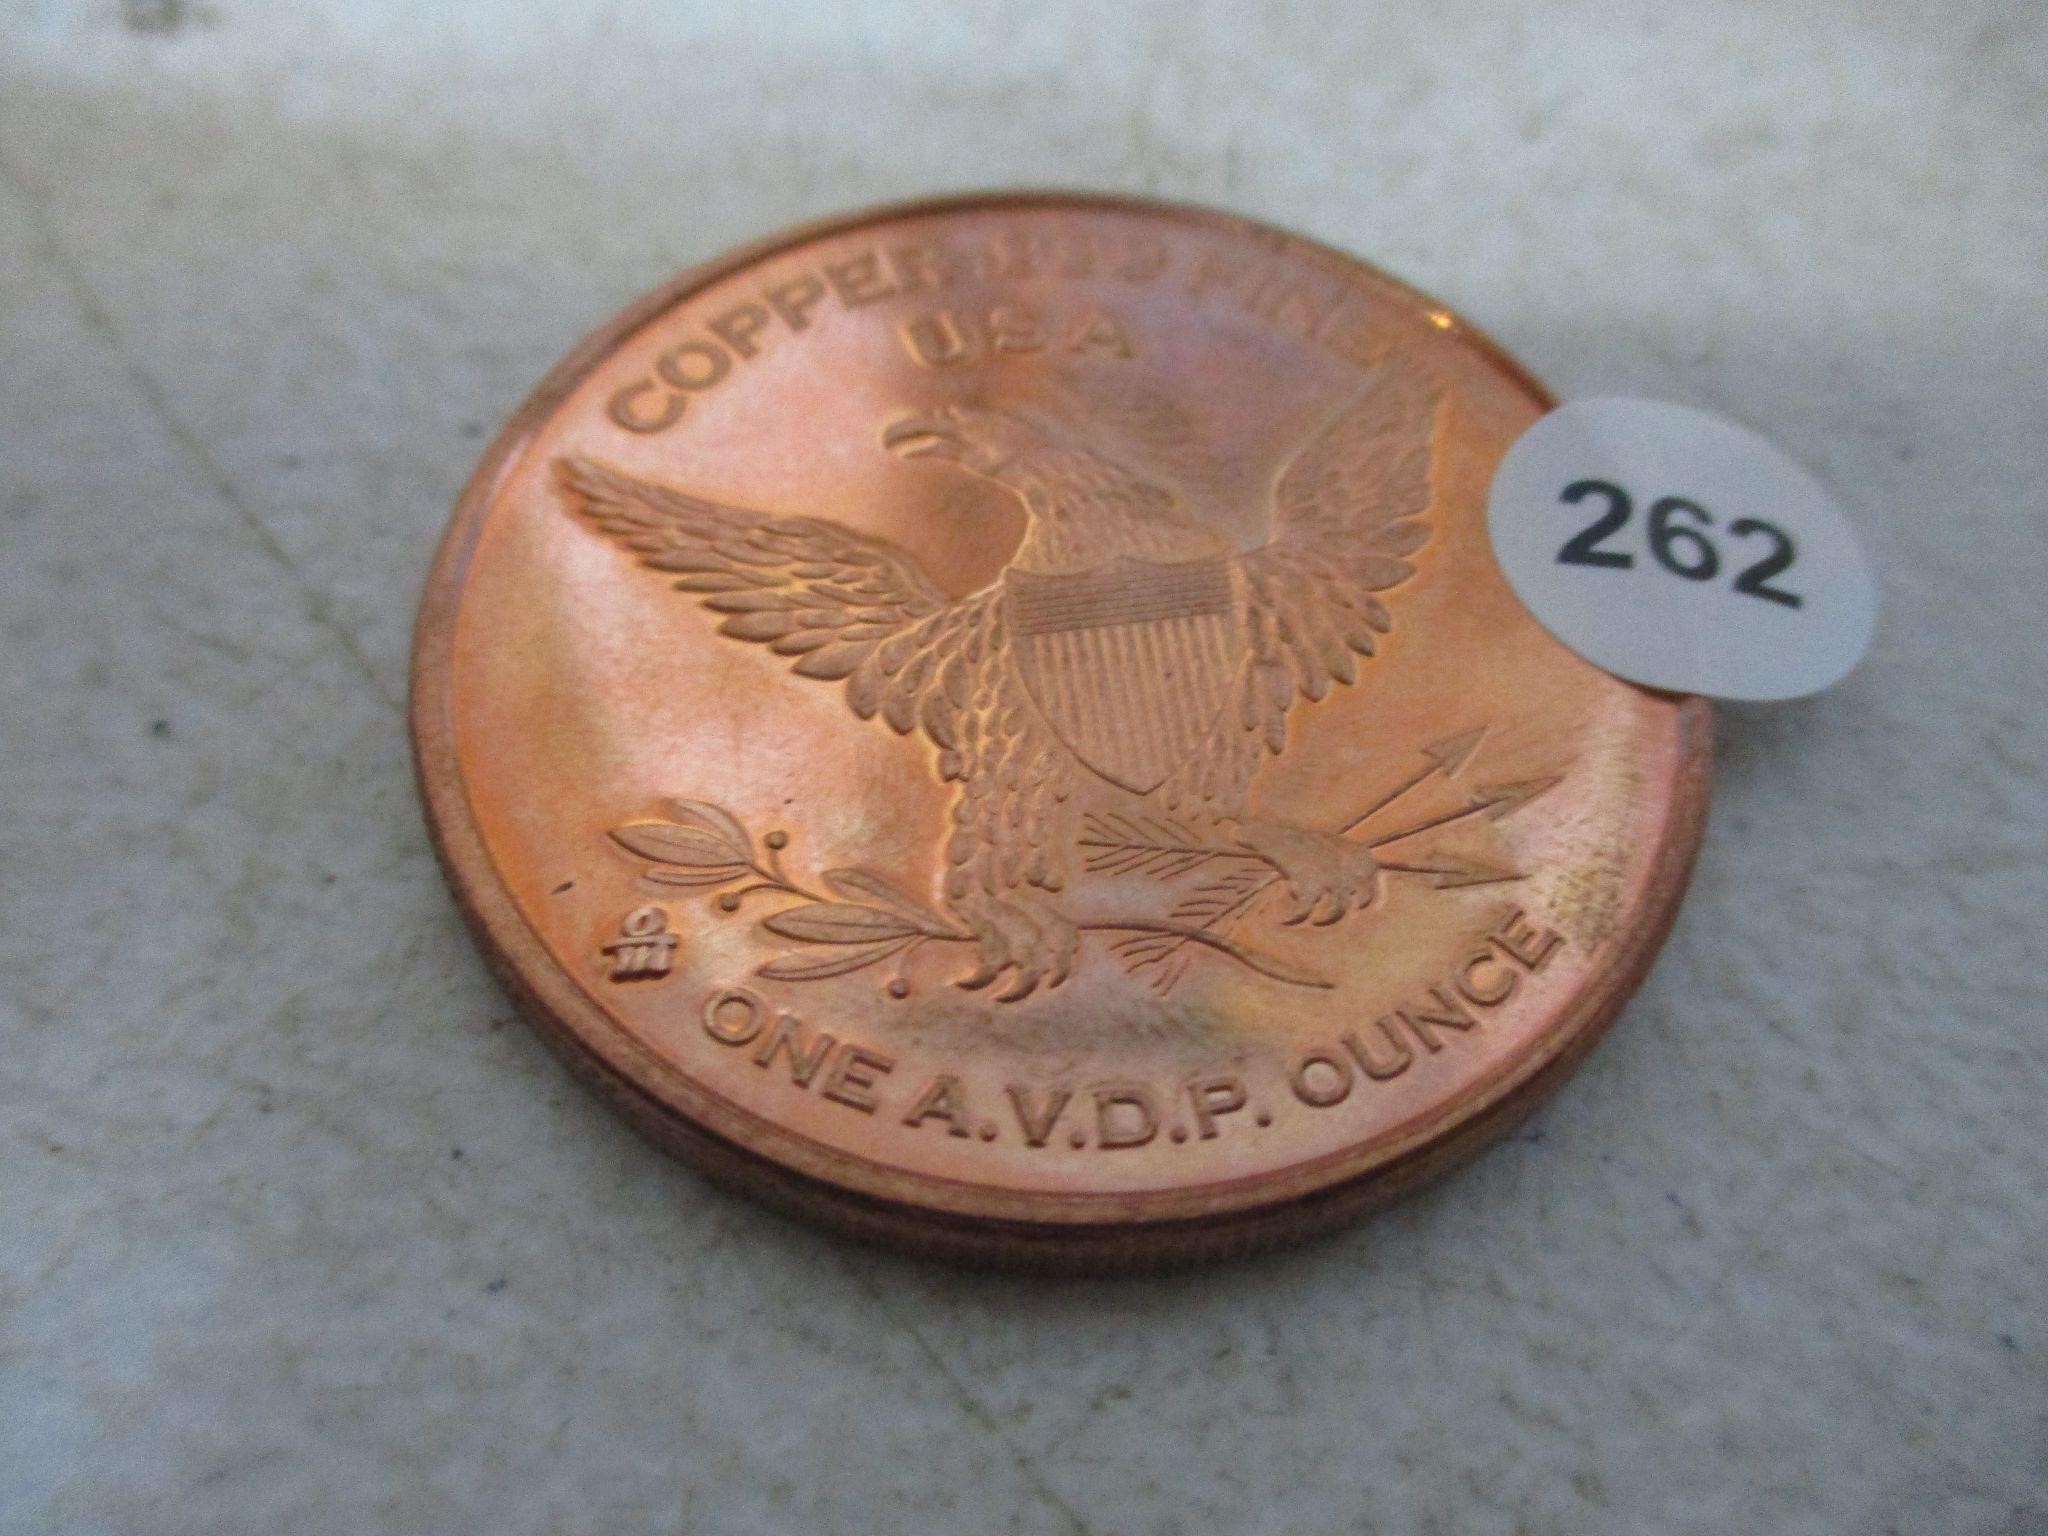 .999 Copper US 1856 Coin